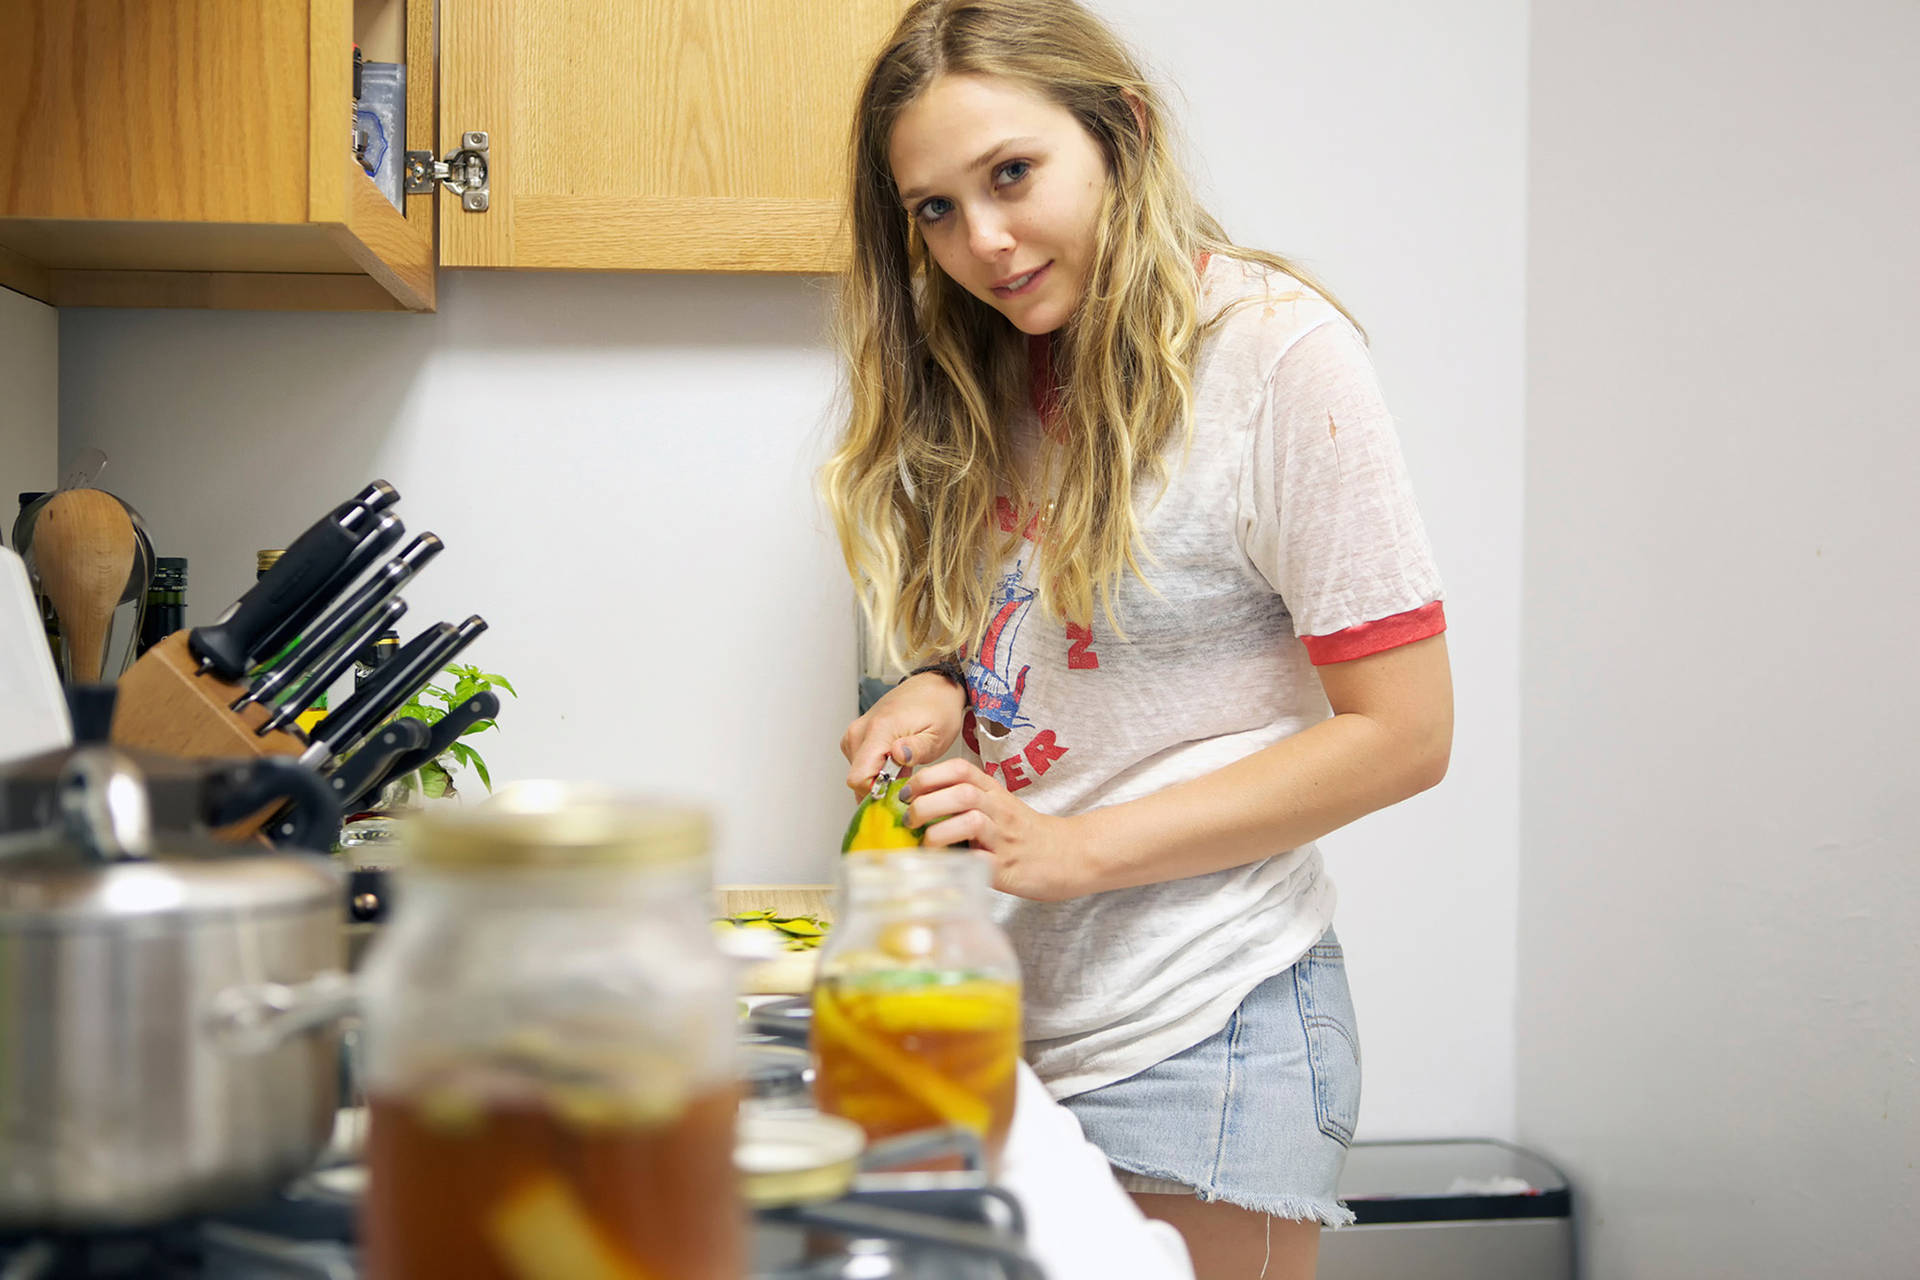 Elizabeth Olsen Cooking At Home Background